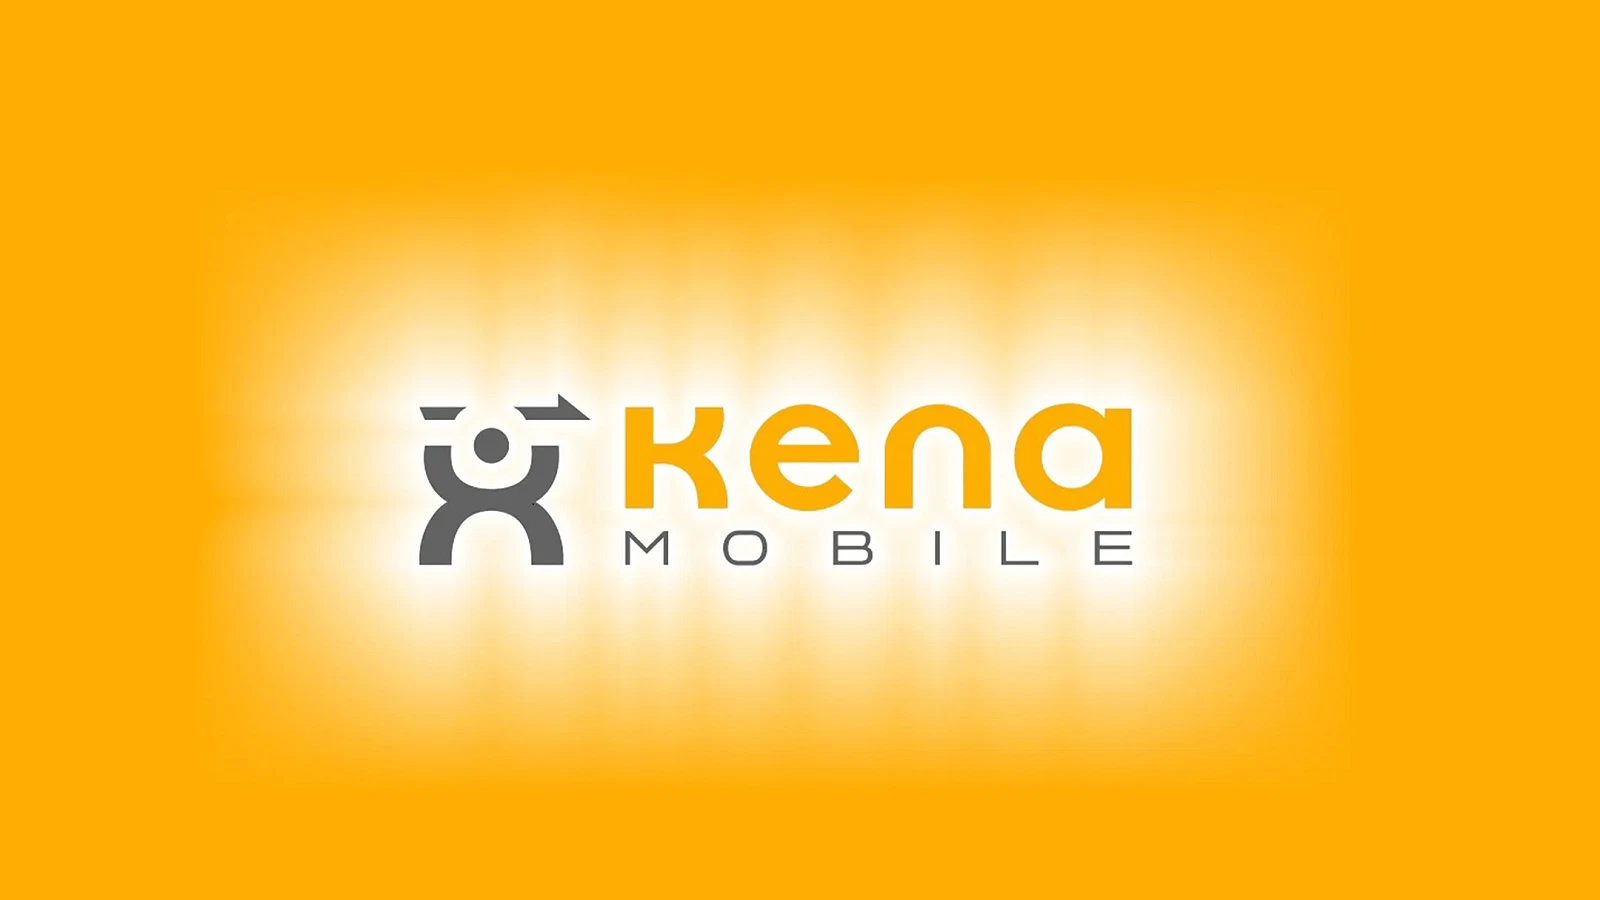 Kena: gratis il primo mese e minuti illimitati per chiamate verso tutti i numeri fissi e mobili